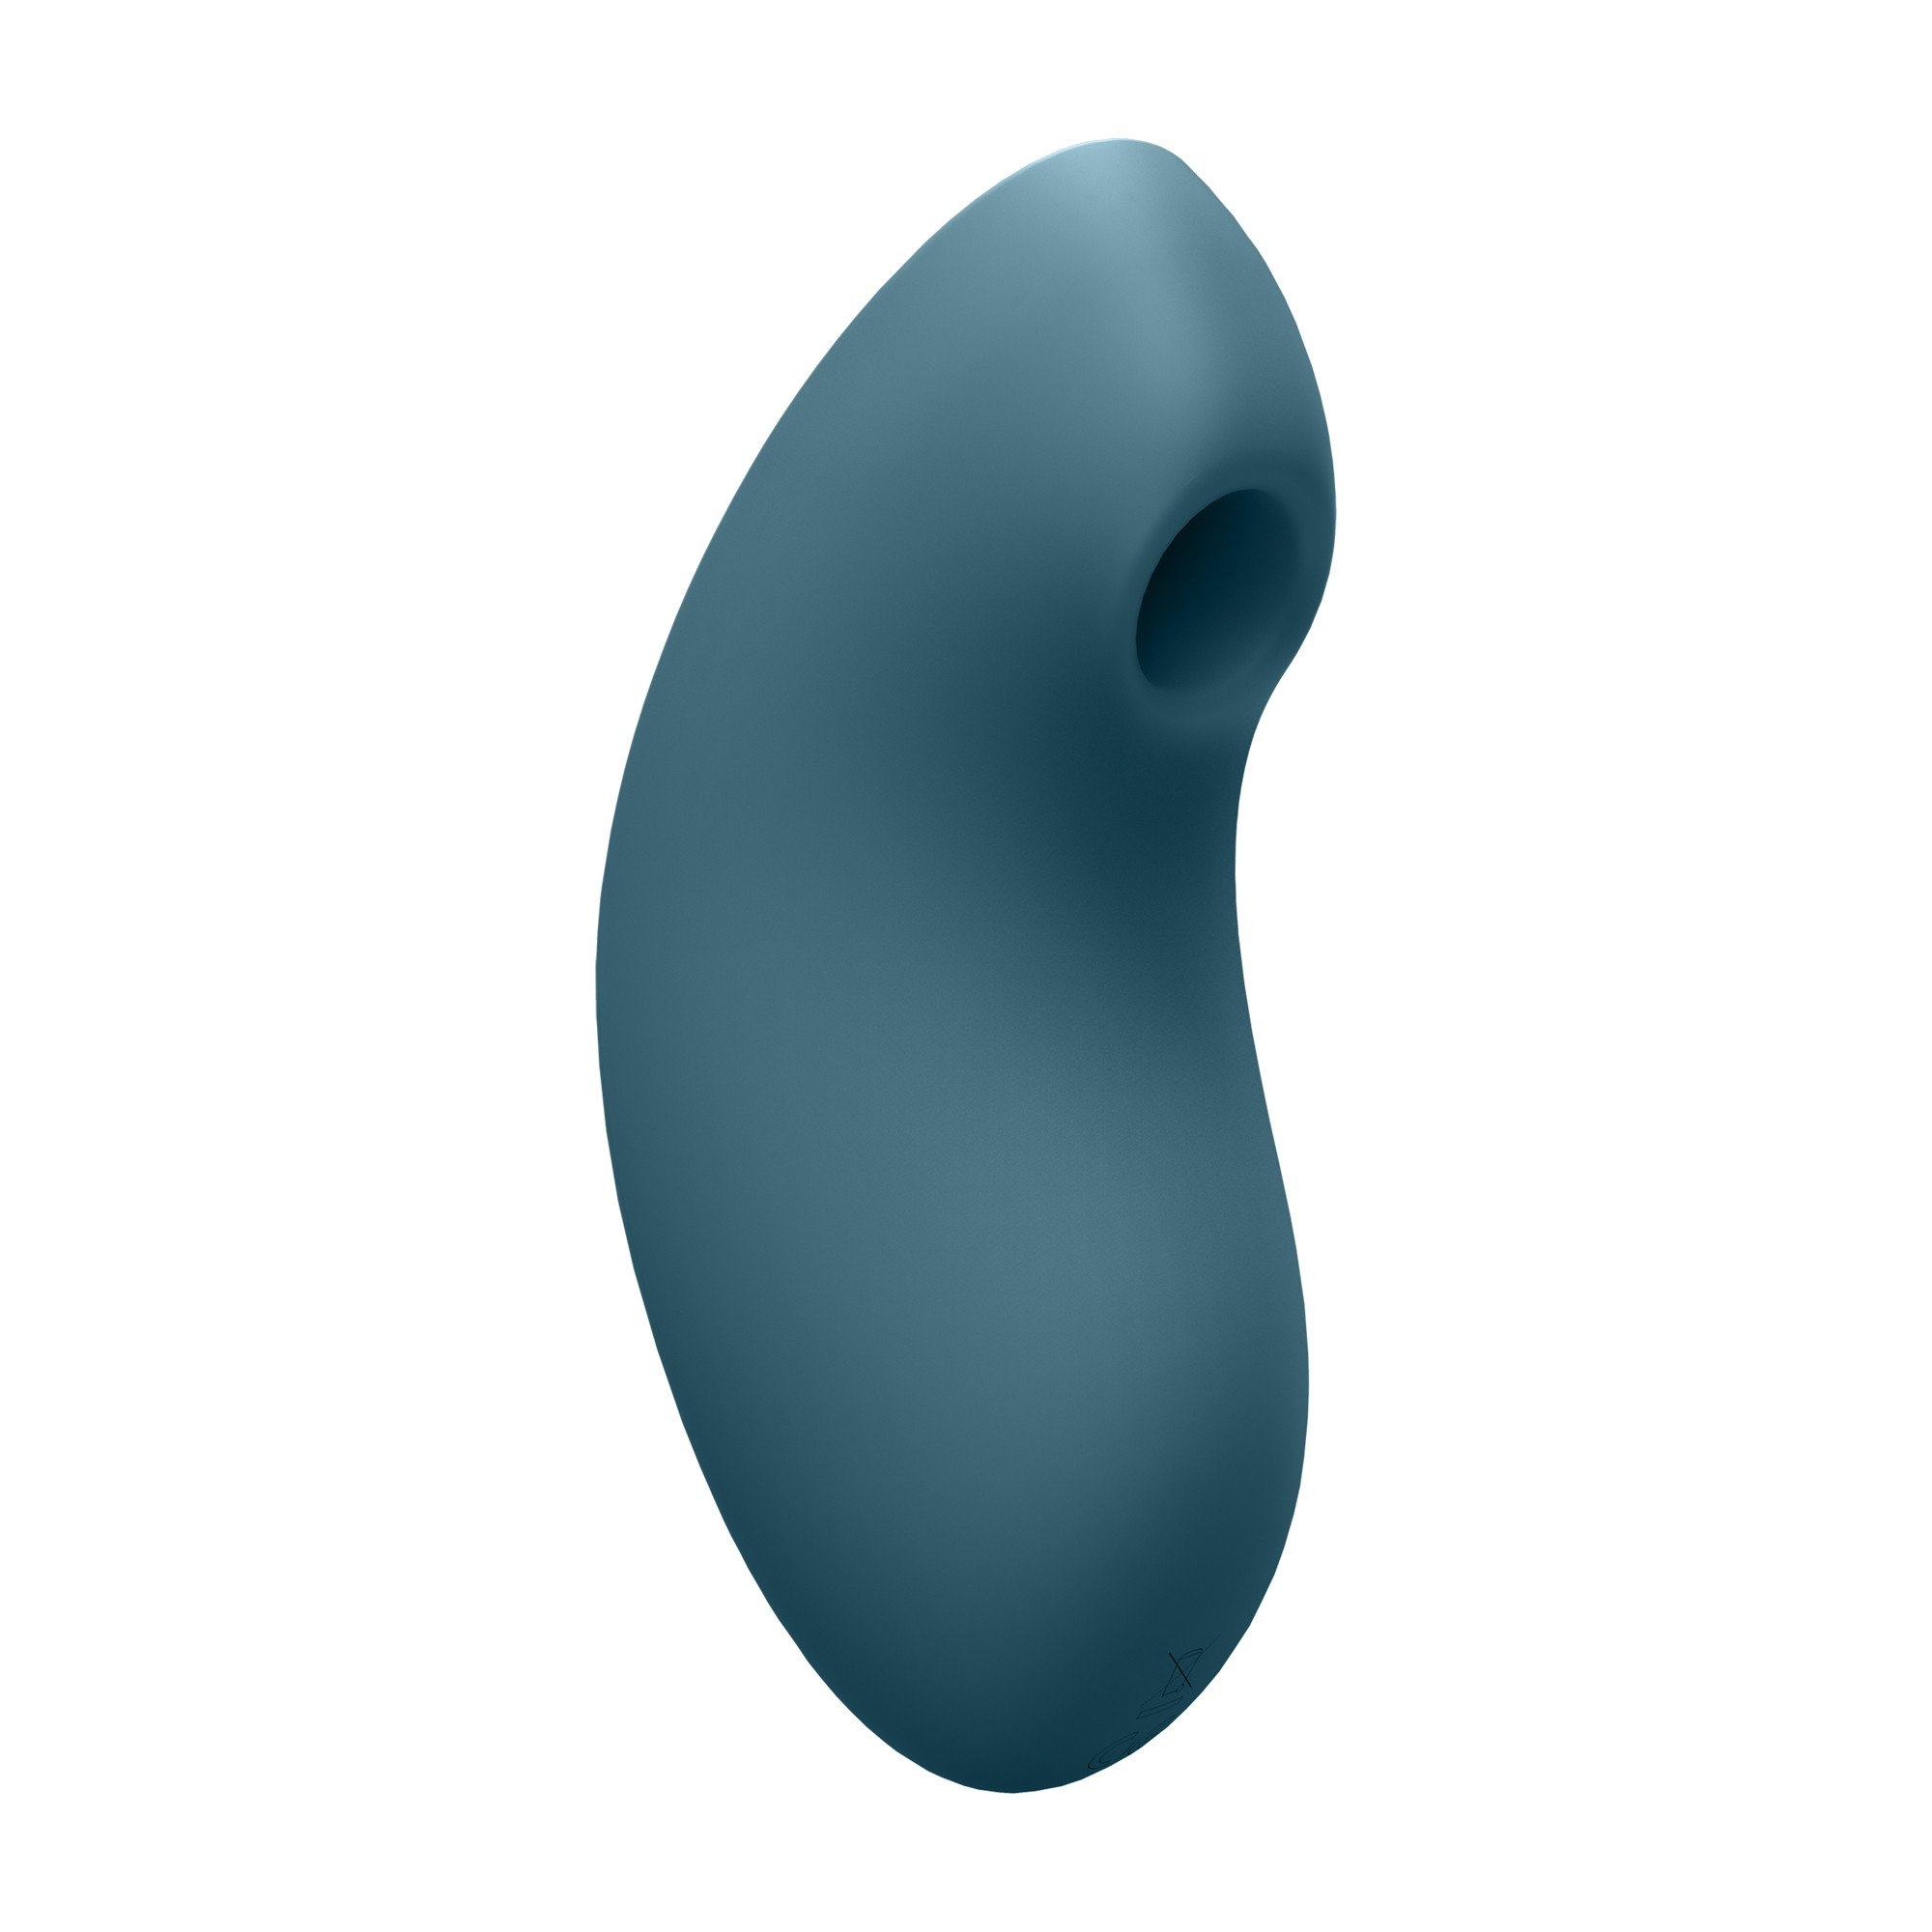 Klitorinis stimuliatorius - vibratorius „Vulva Lover 2“ - Satisfyer